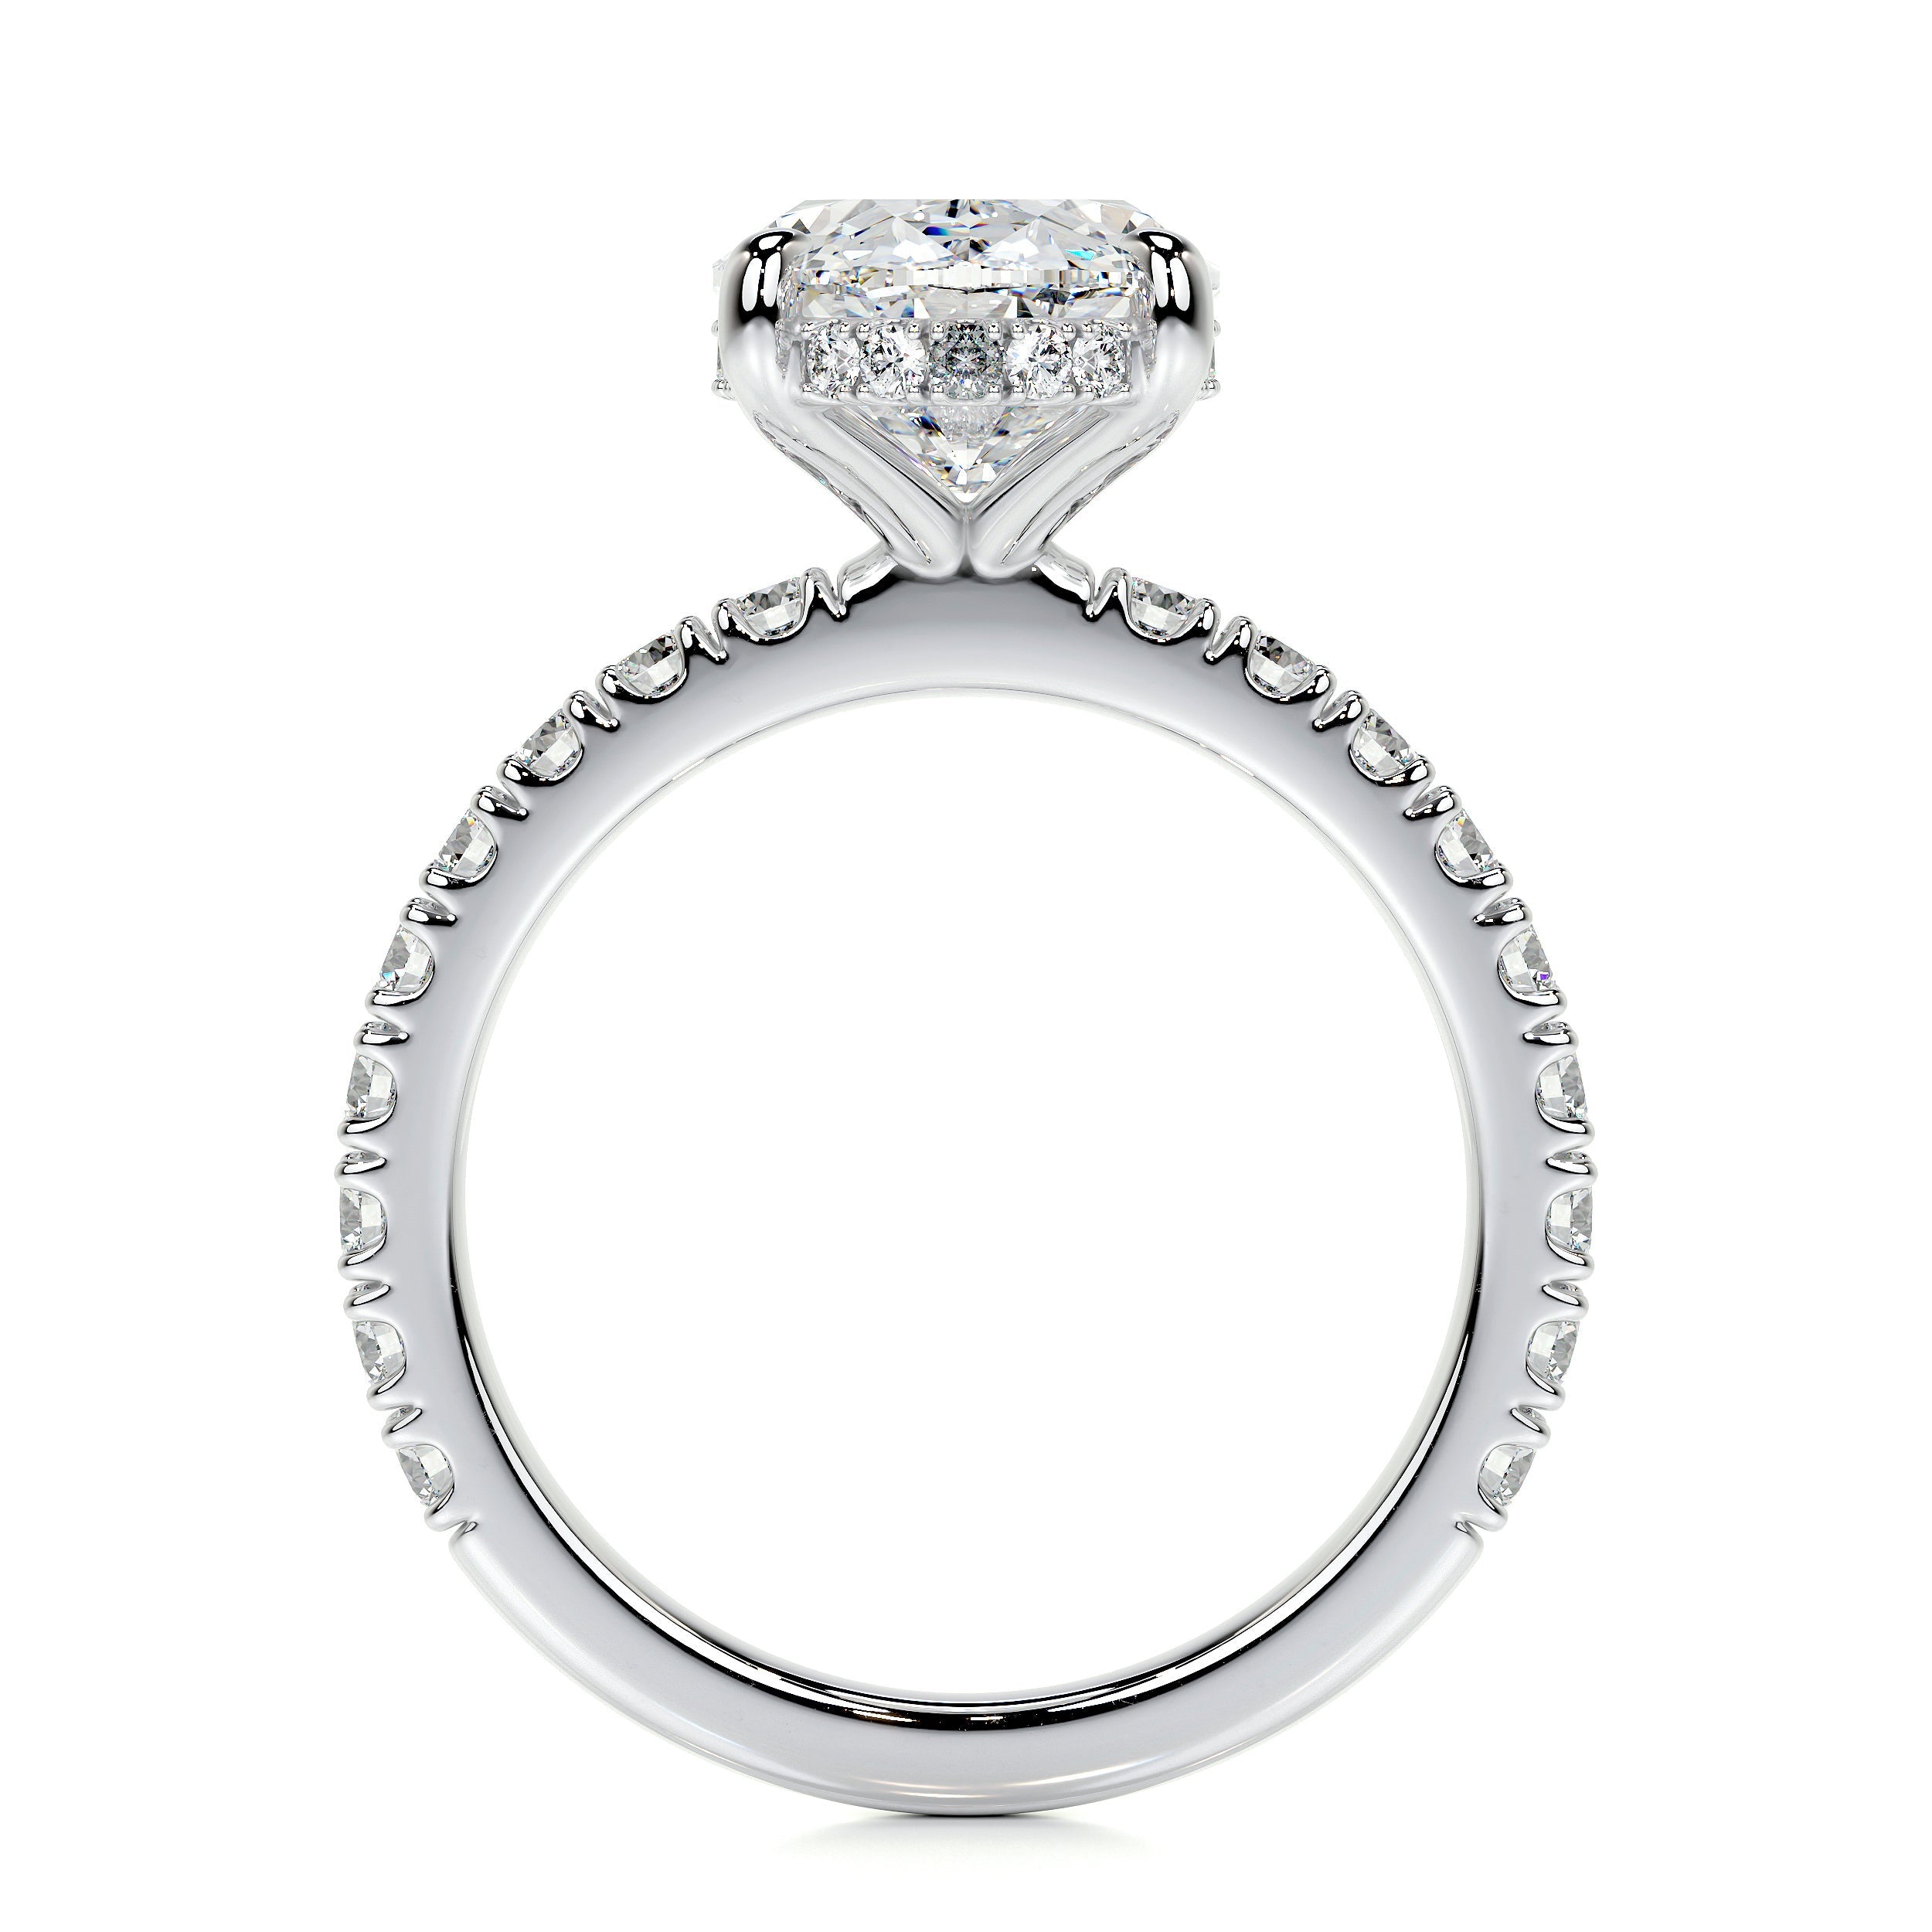 Lucy Lab Grown Diamond Ring   (3.5 Carat) -14K White Gold